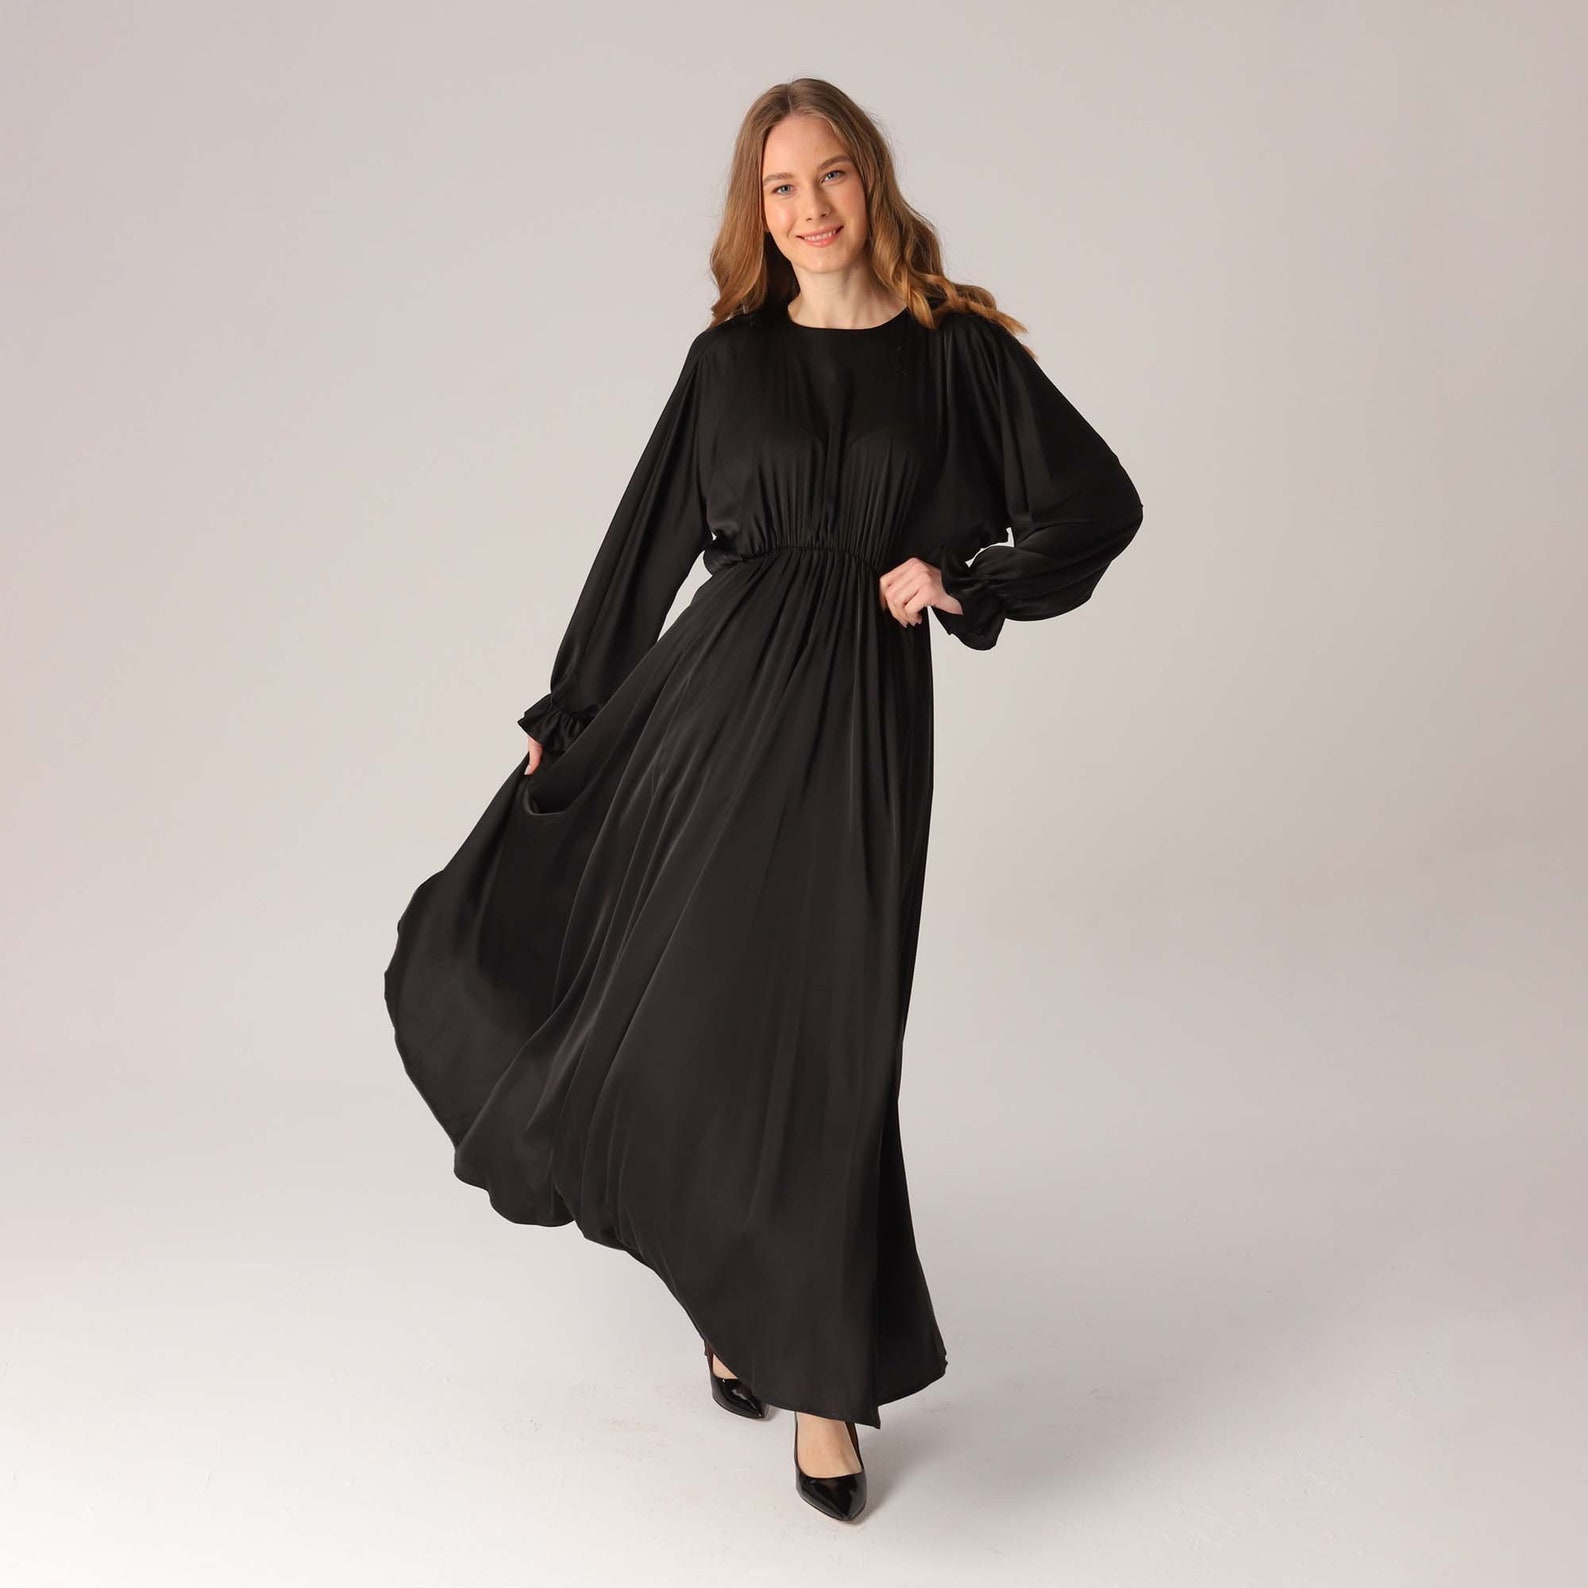 Black Silk Satin Dress Elastic Waist Maxi Dress Long Sleeve | Etsy